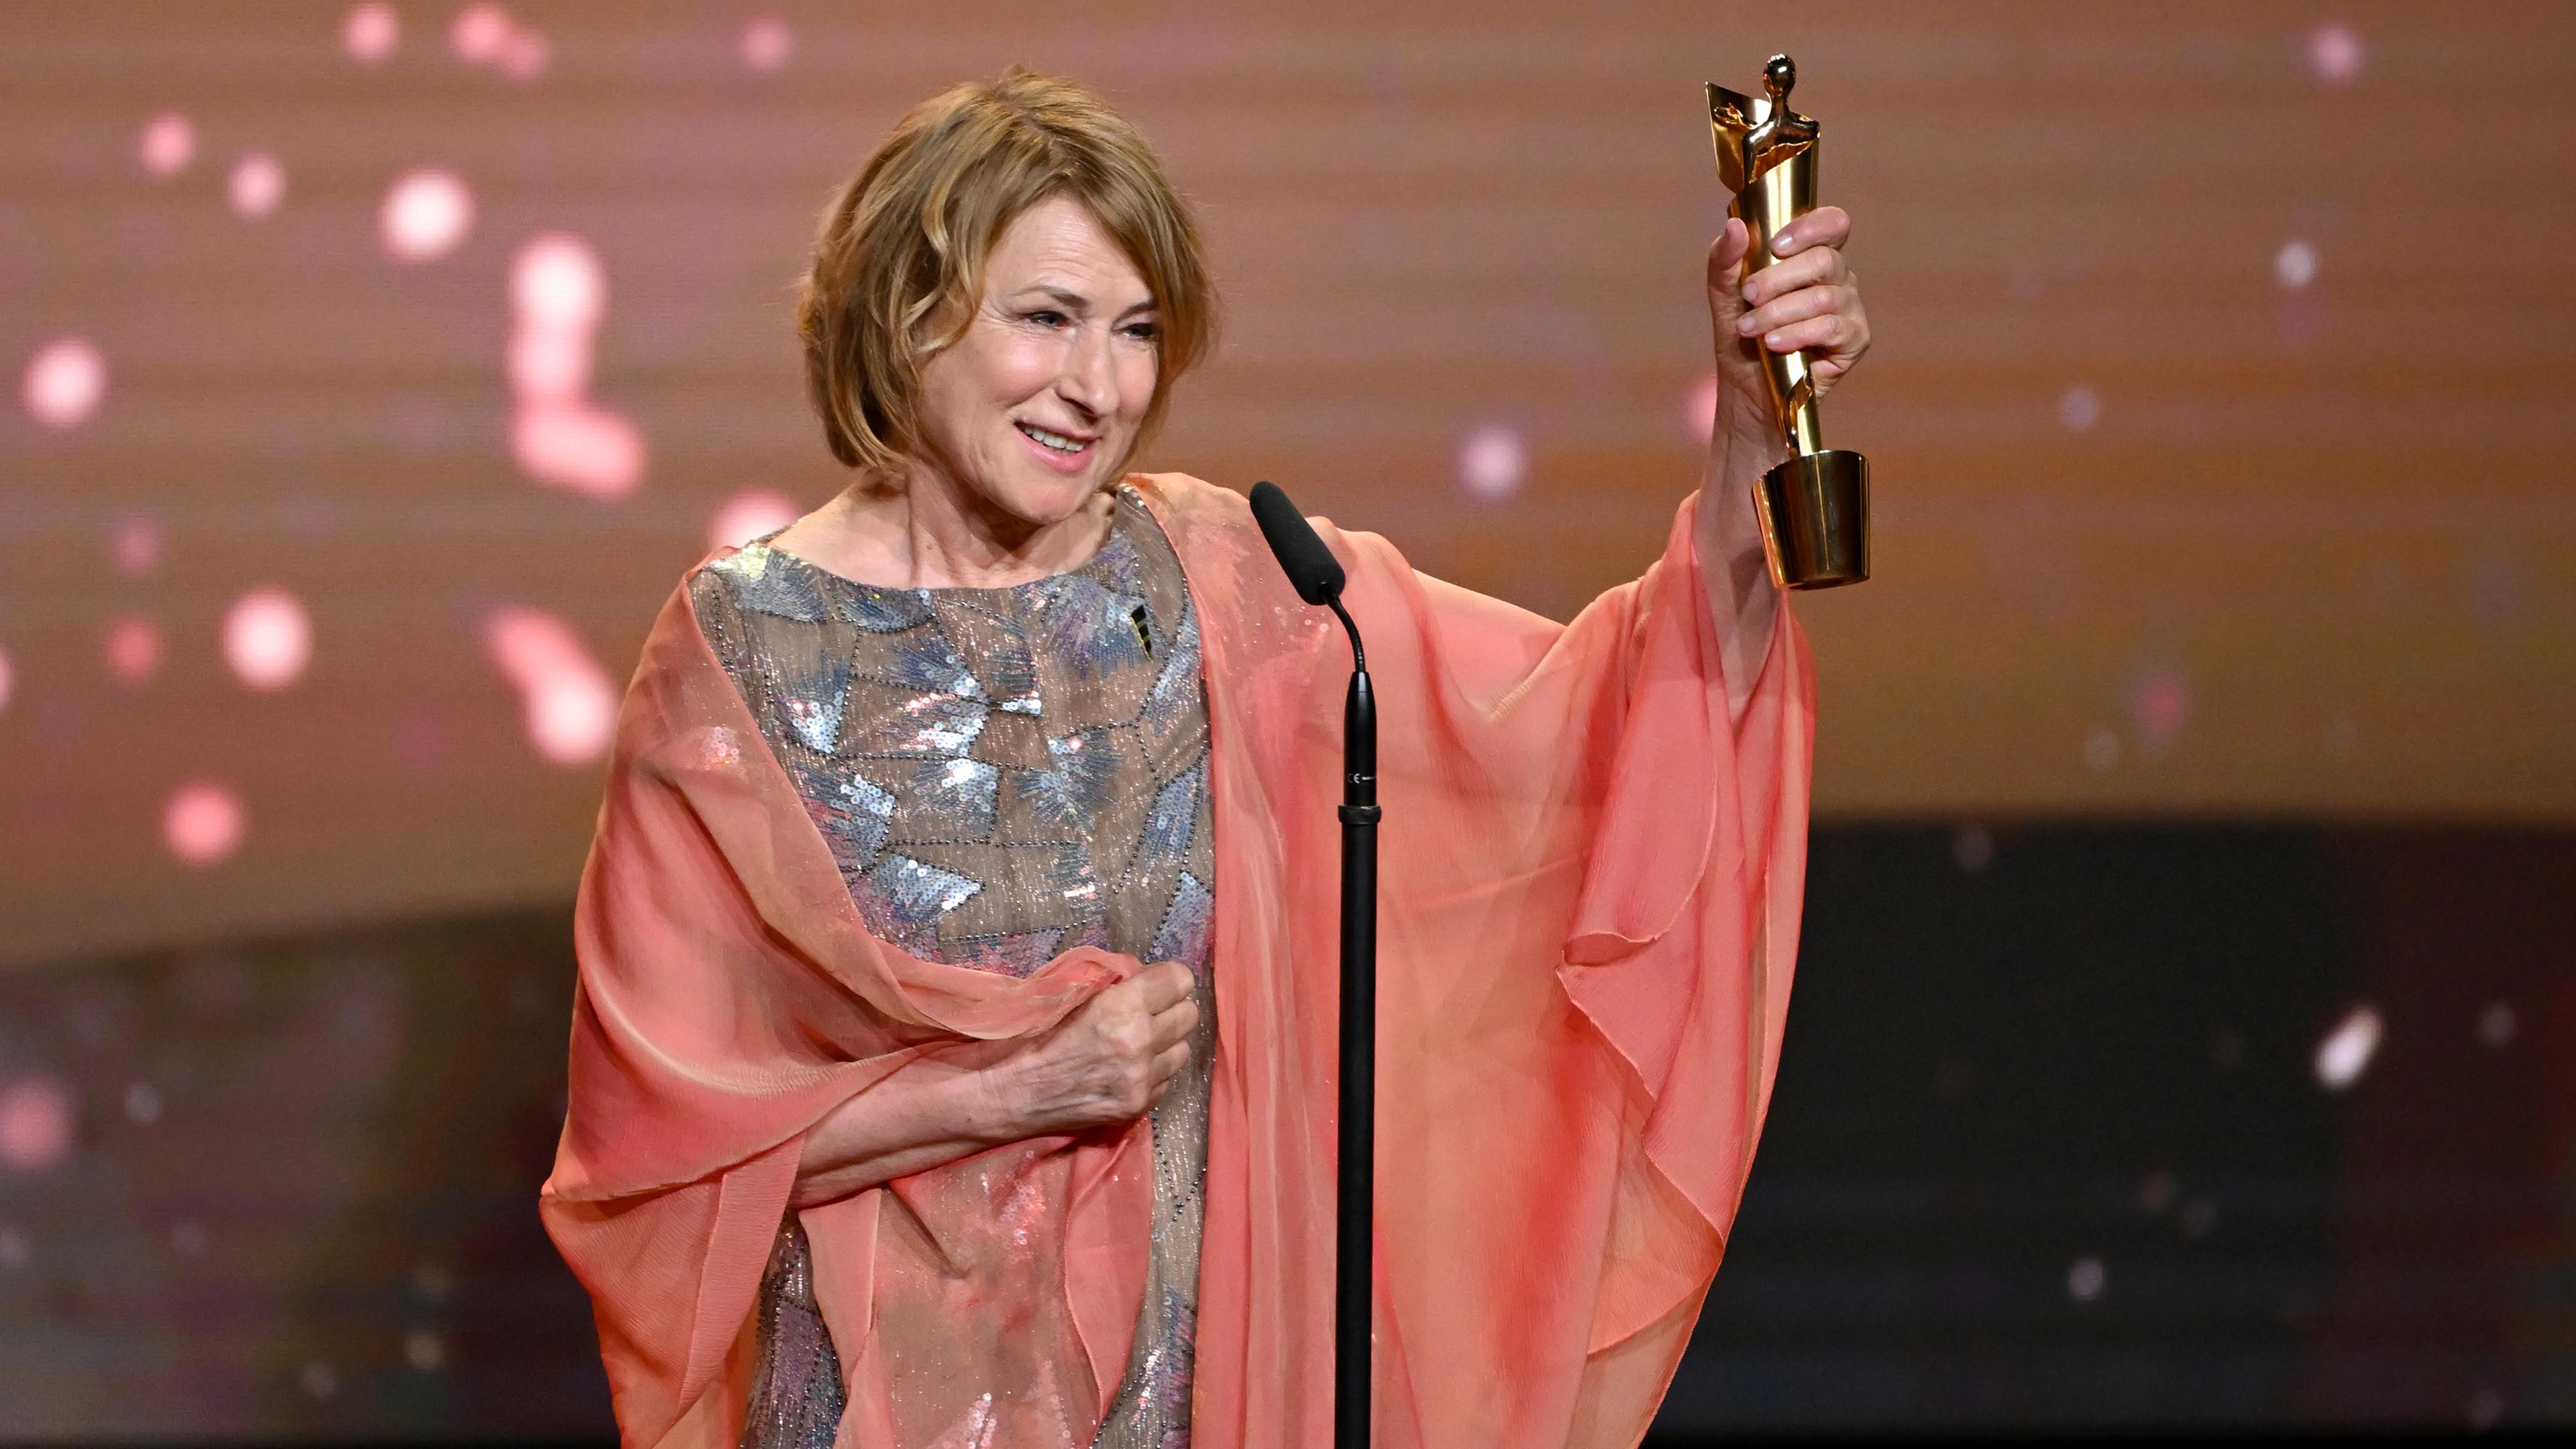 Schauspielerin Corinna Harfouch freut sich bei der Verleihung des Deutschen Filmpreises über die Auszeichnung in der Kategorie "Beste weibliche Hauptrolle". 